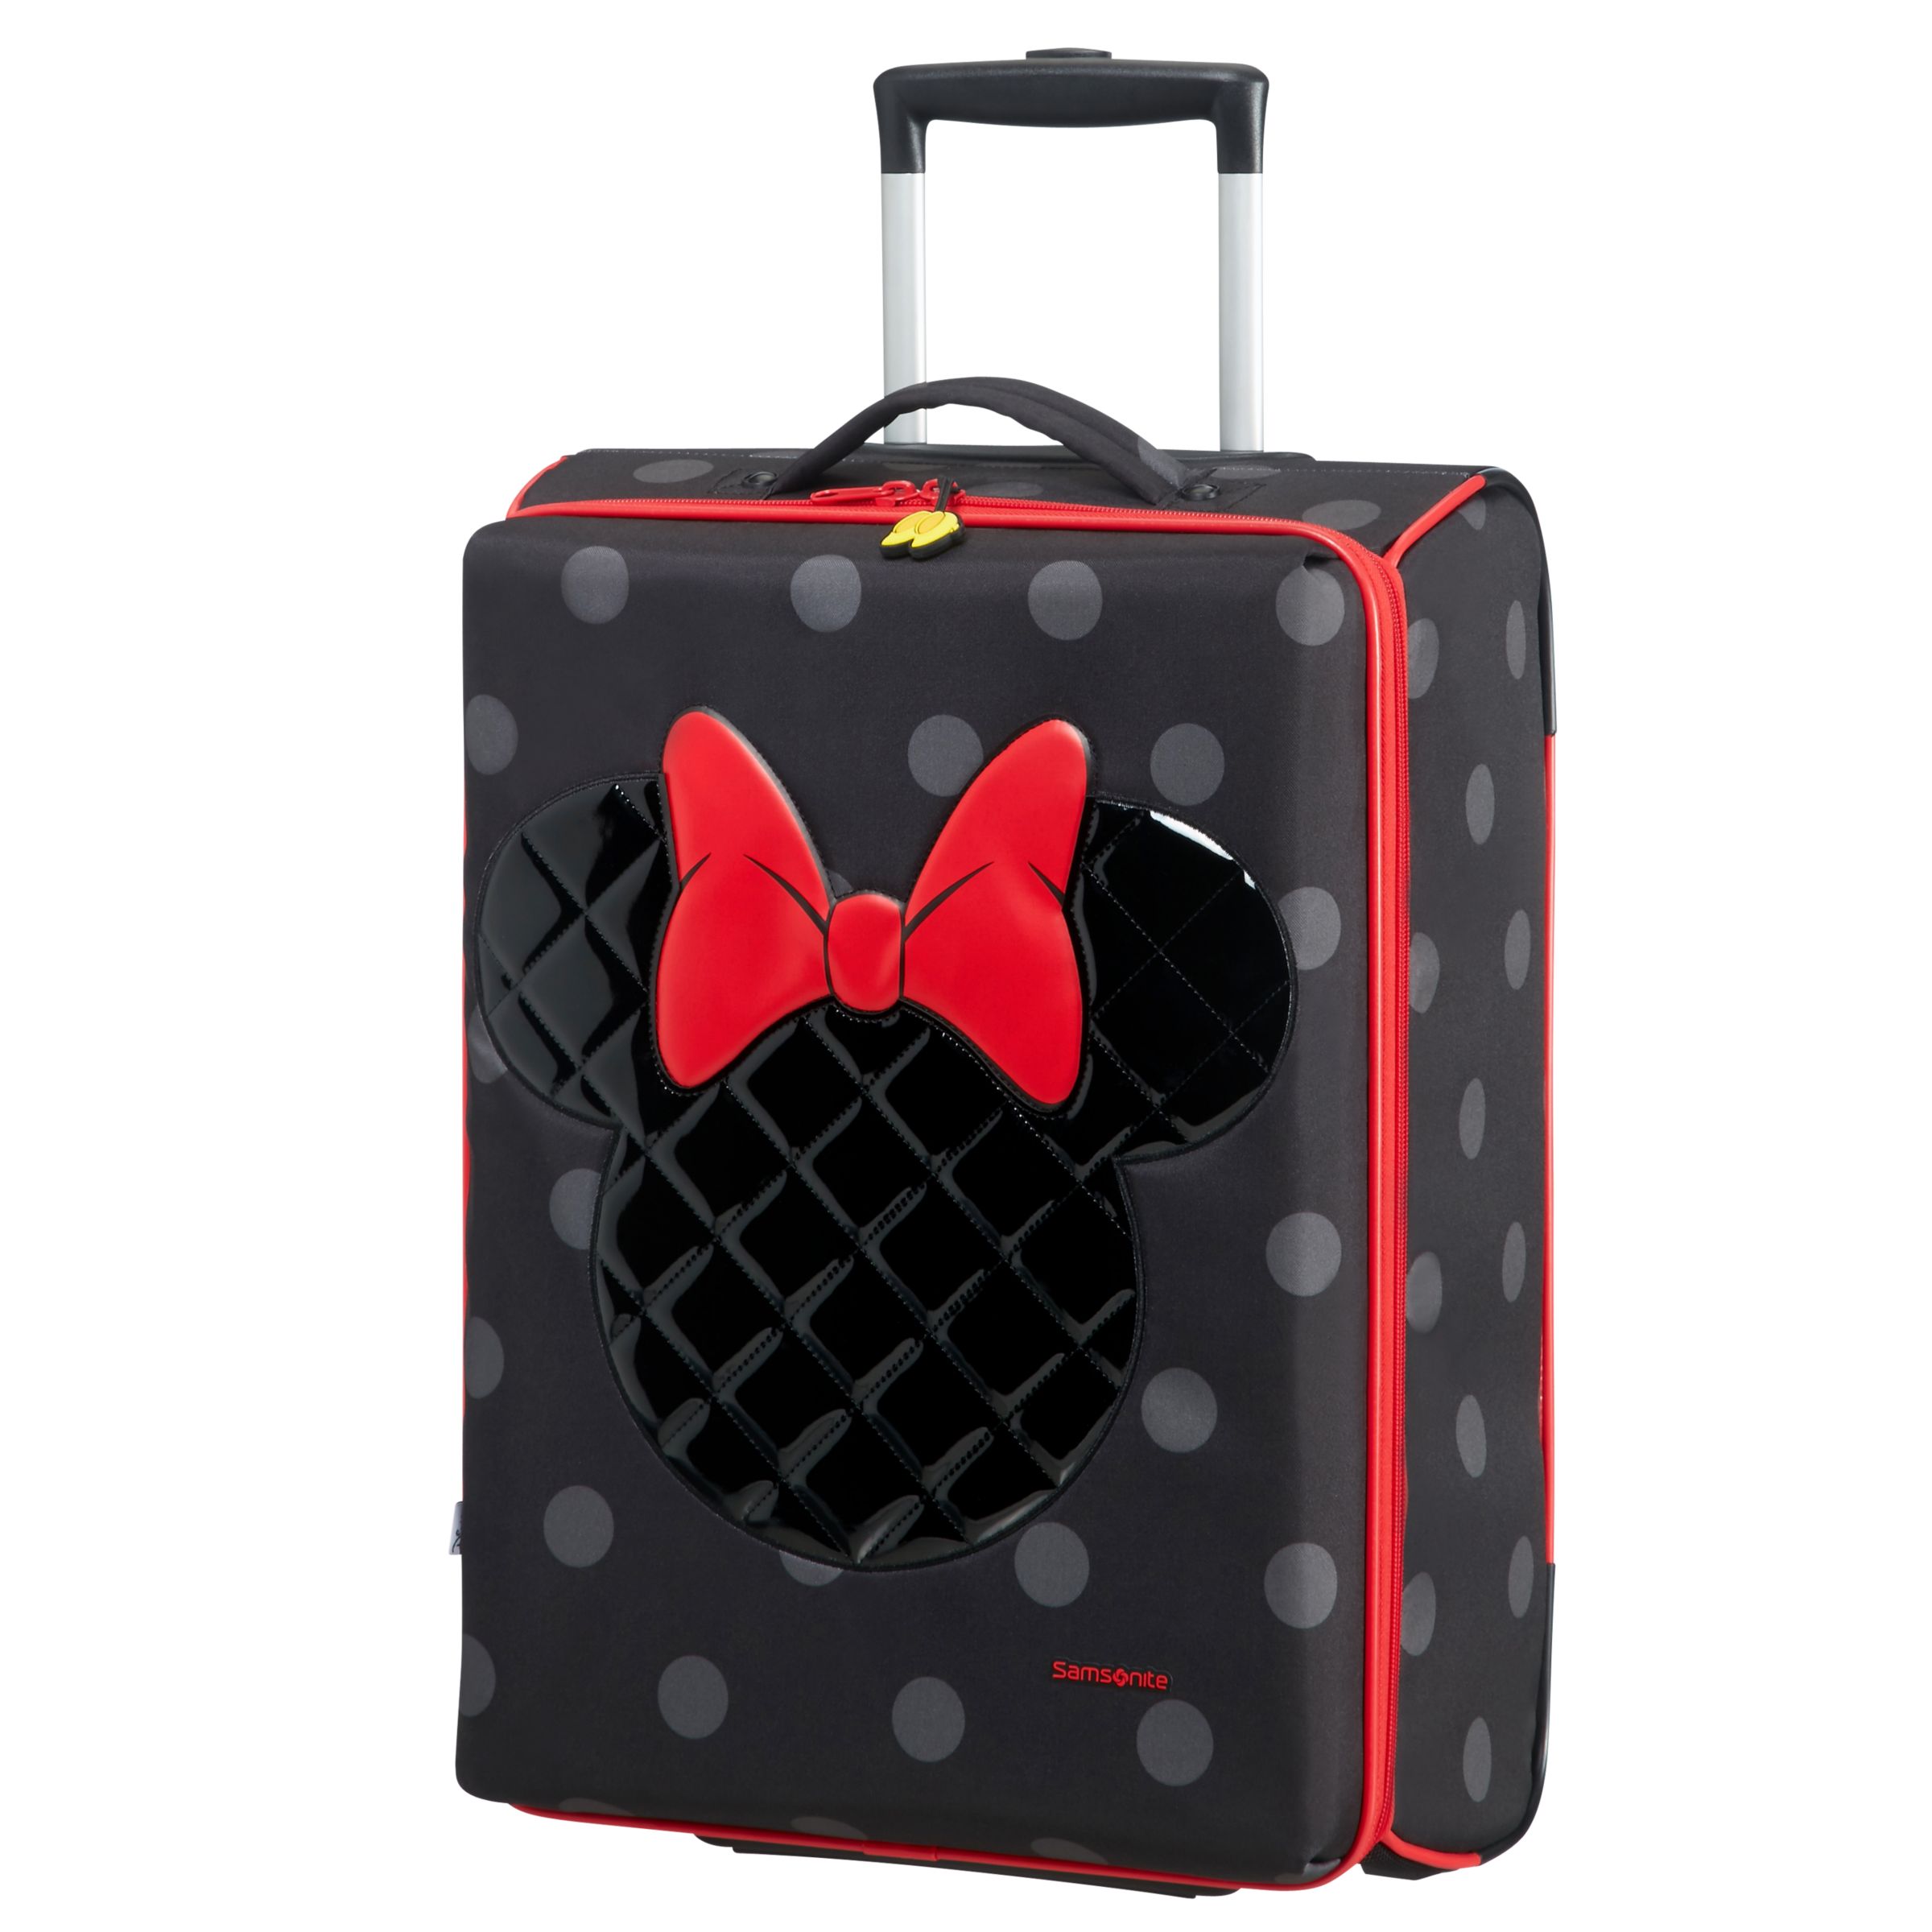 Samsonite Disney Minnie Iconic 52cm Cabin Suitcase, Black